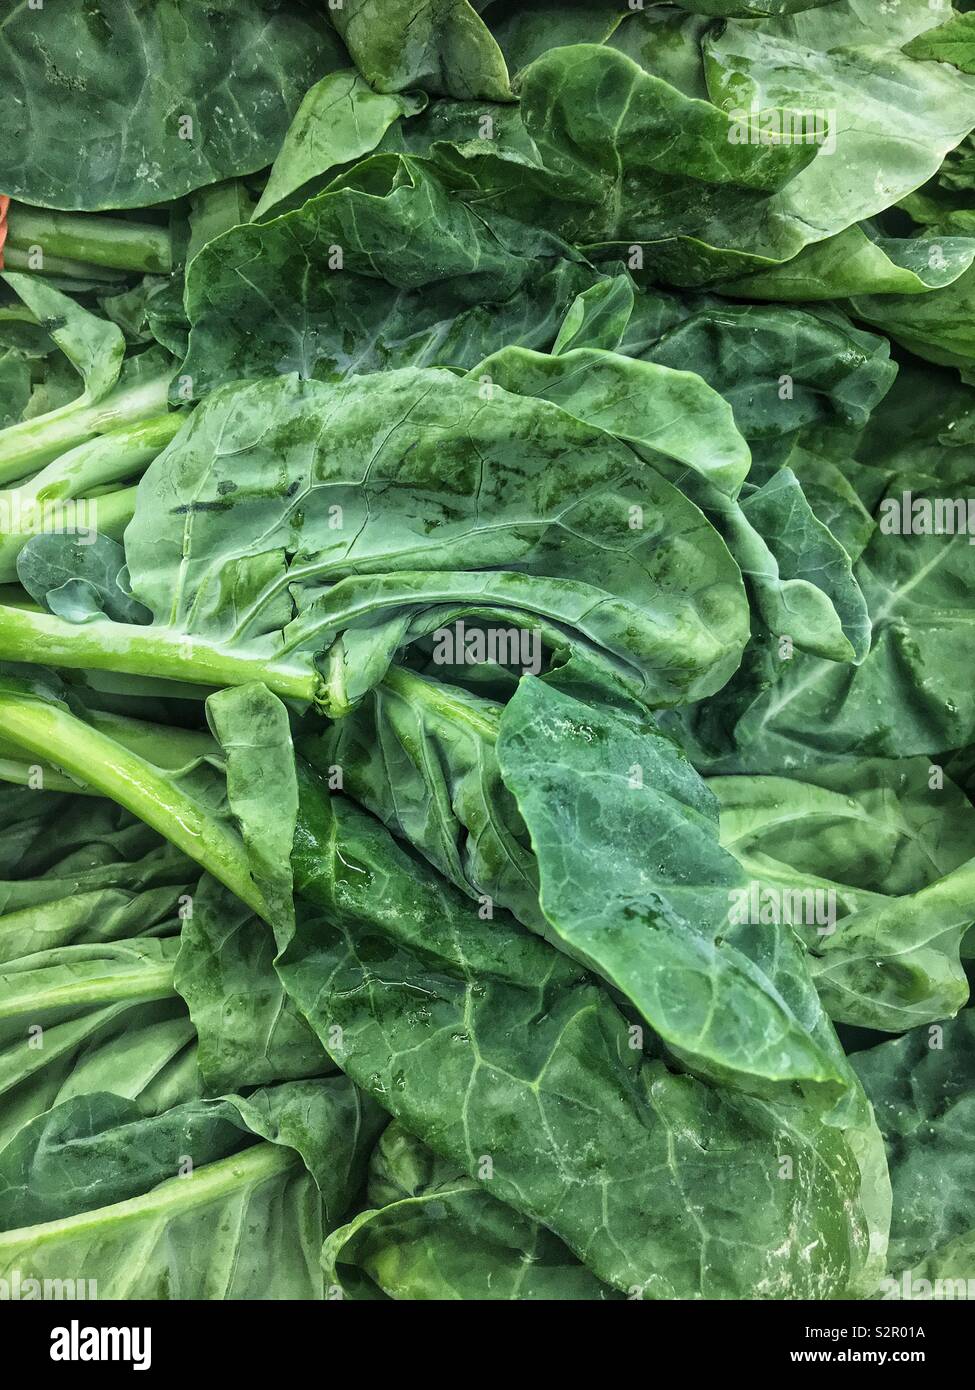 Image complète de produits frais délicieux épinards verts mûrs, Spinacia oleracea. Banque D'Images